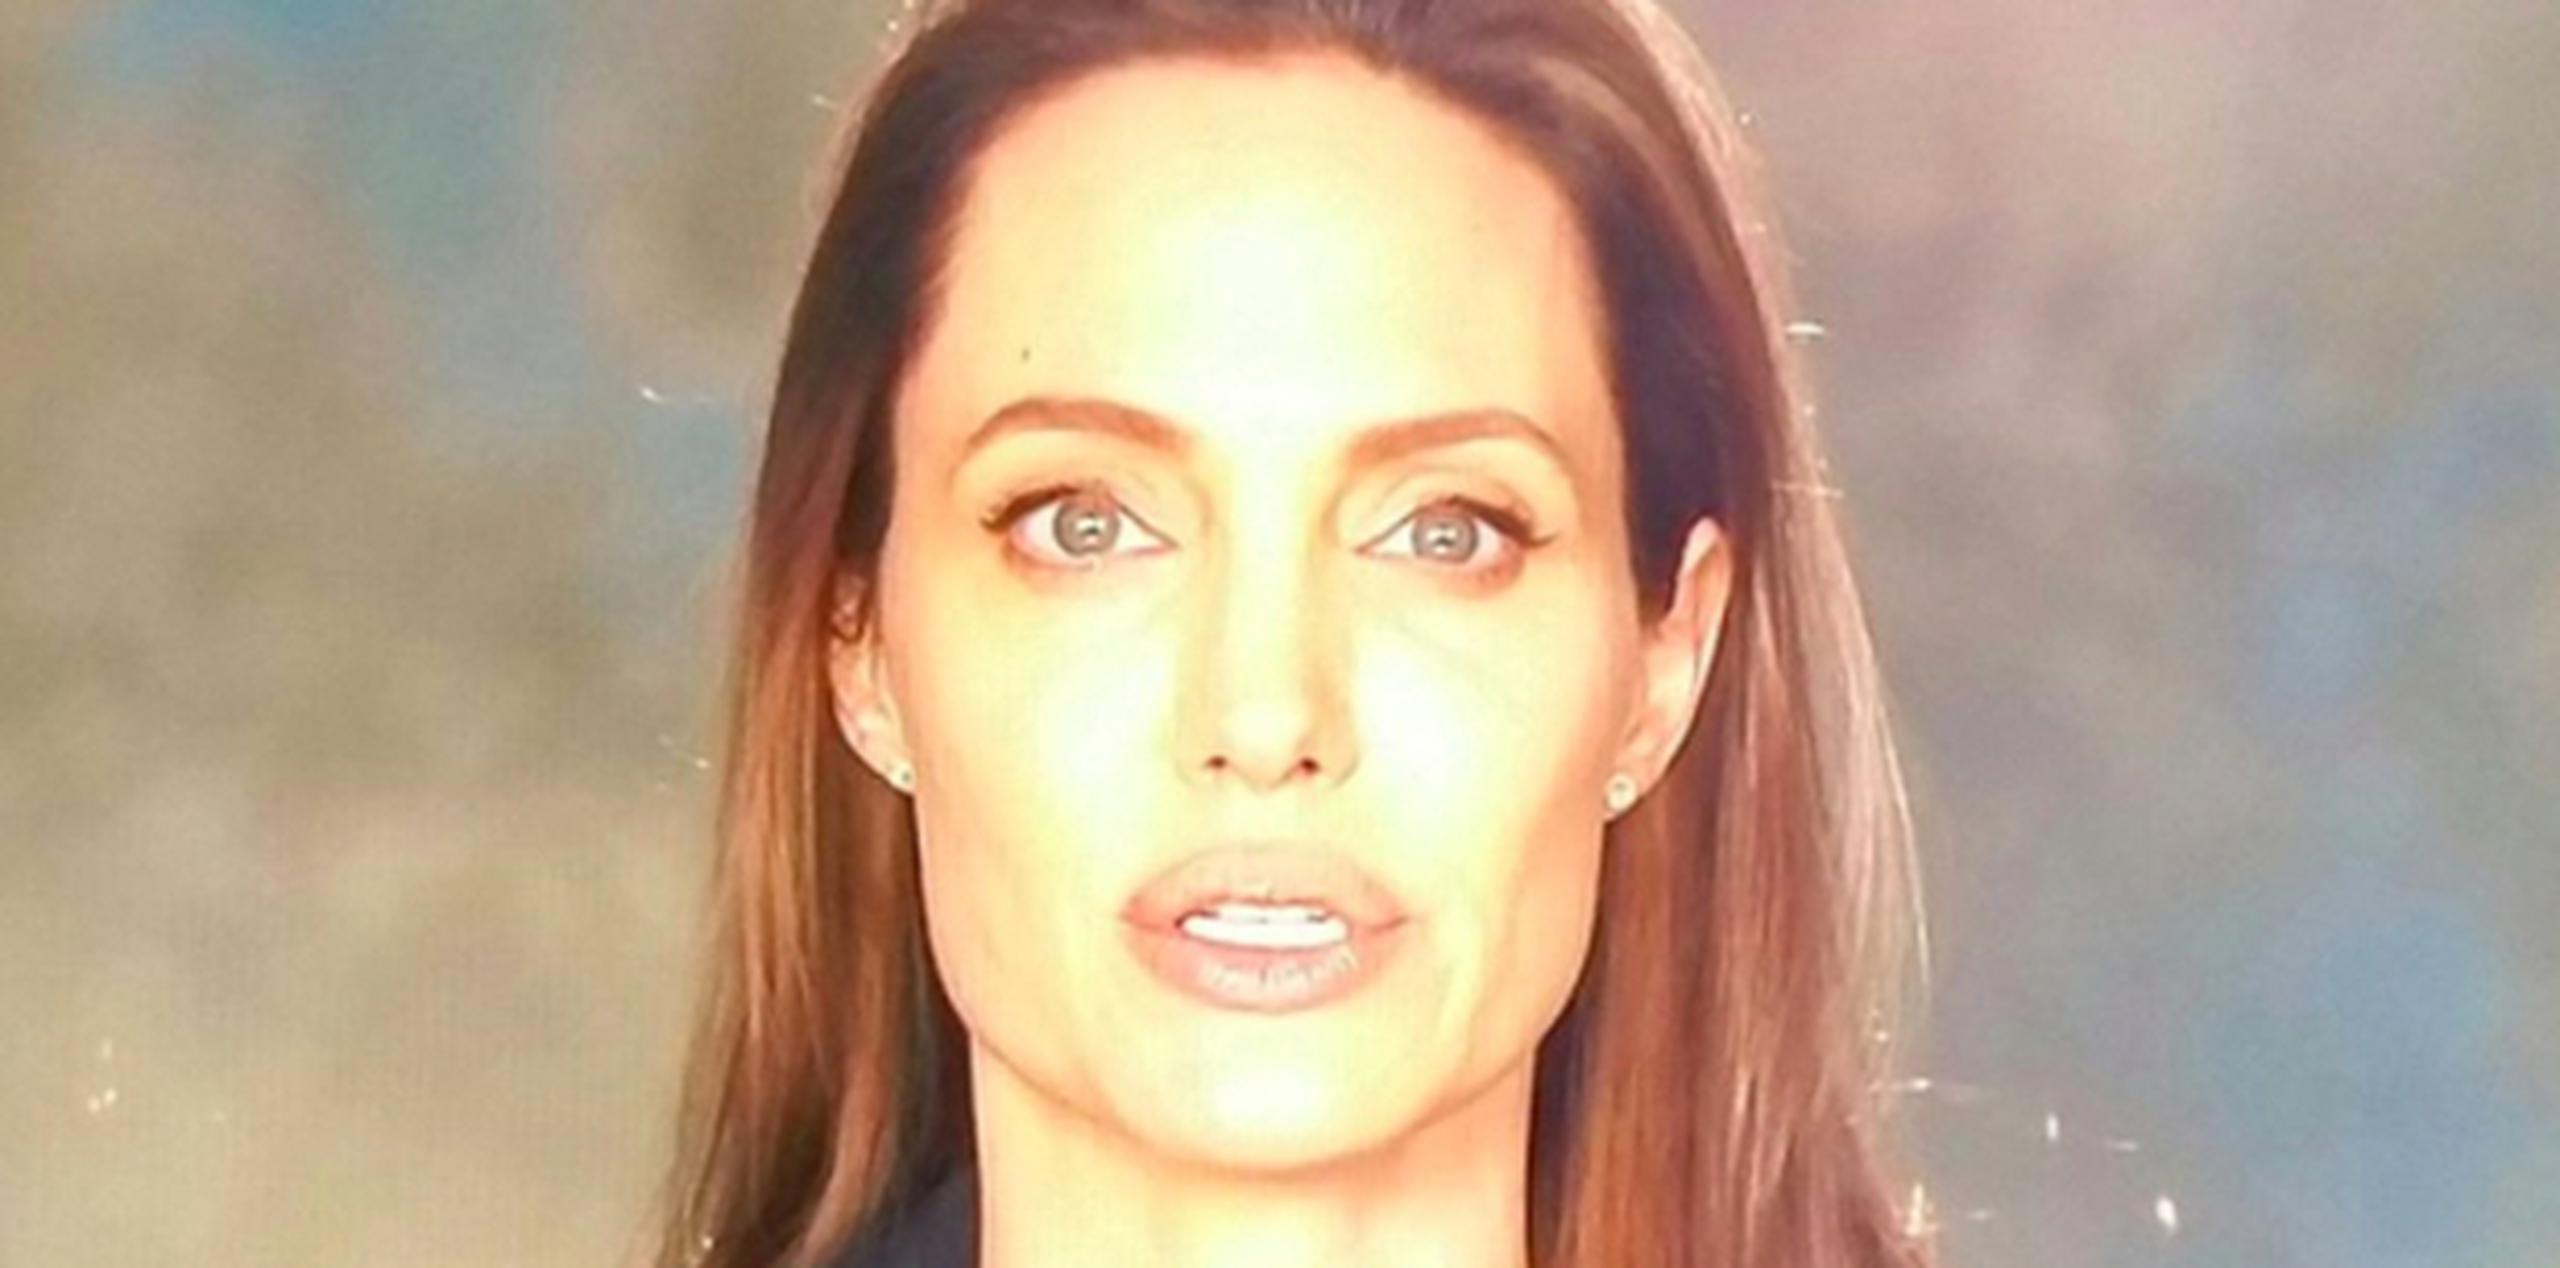 Jolie aparece impecable y serena, con maquillaje sencillo, elegante chaqueta negra y blusa negra. (Foto/Captura)